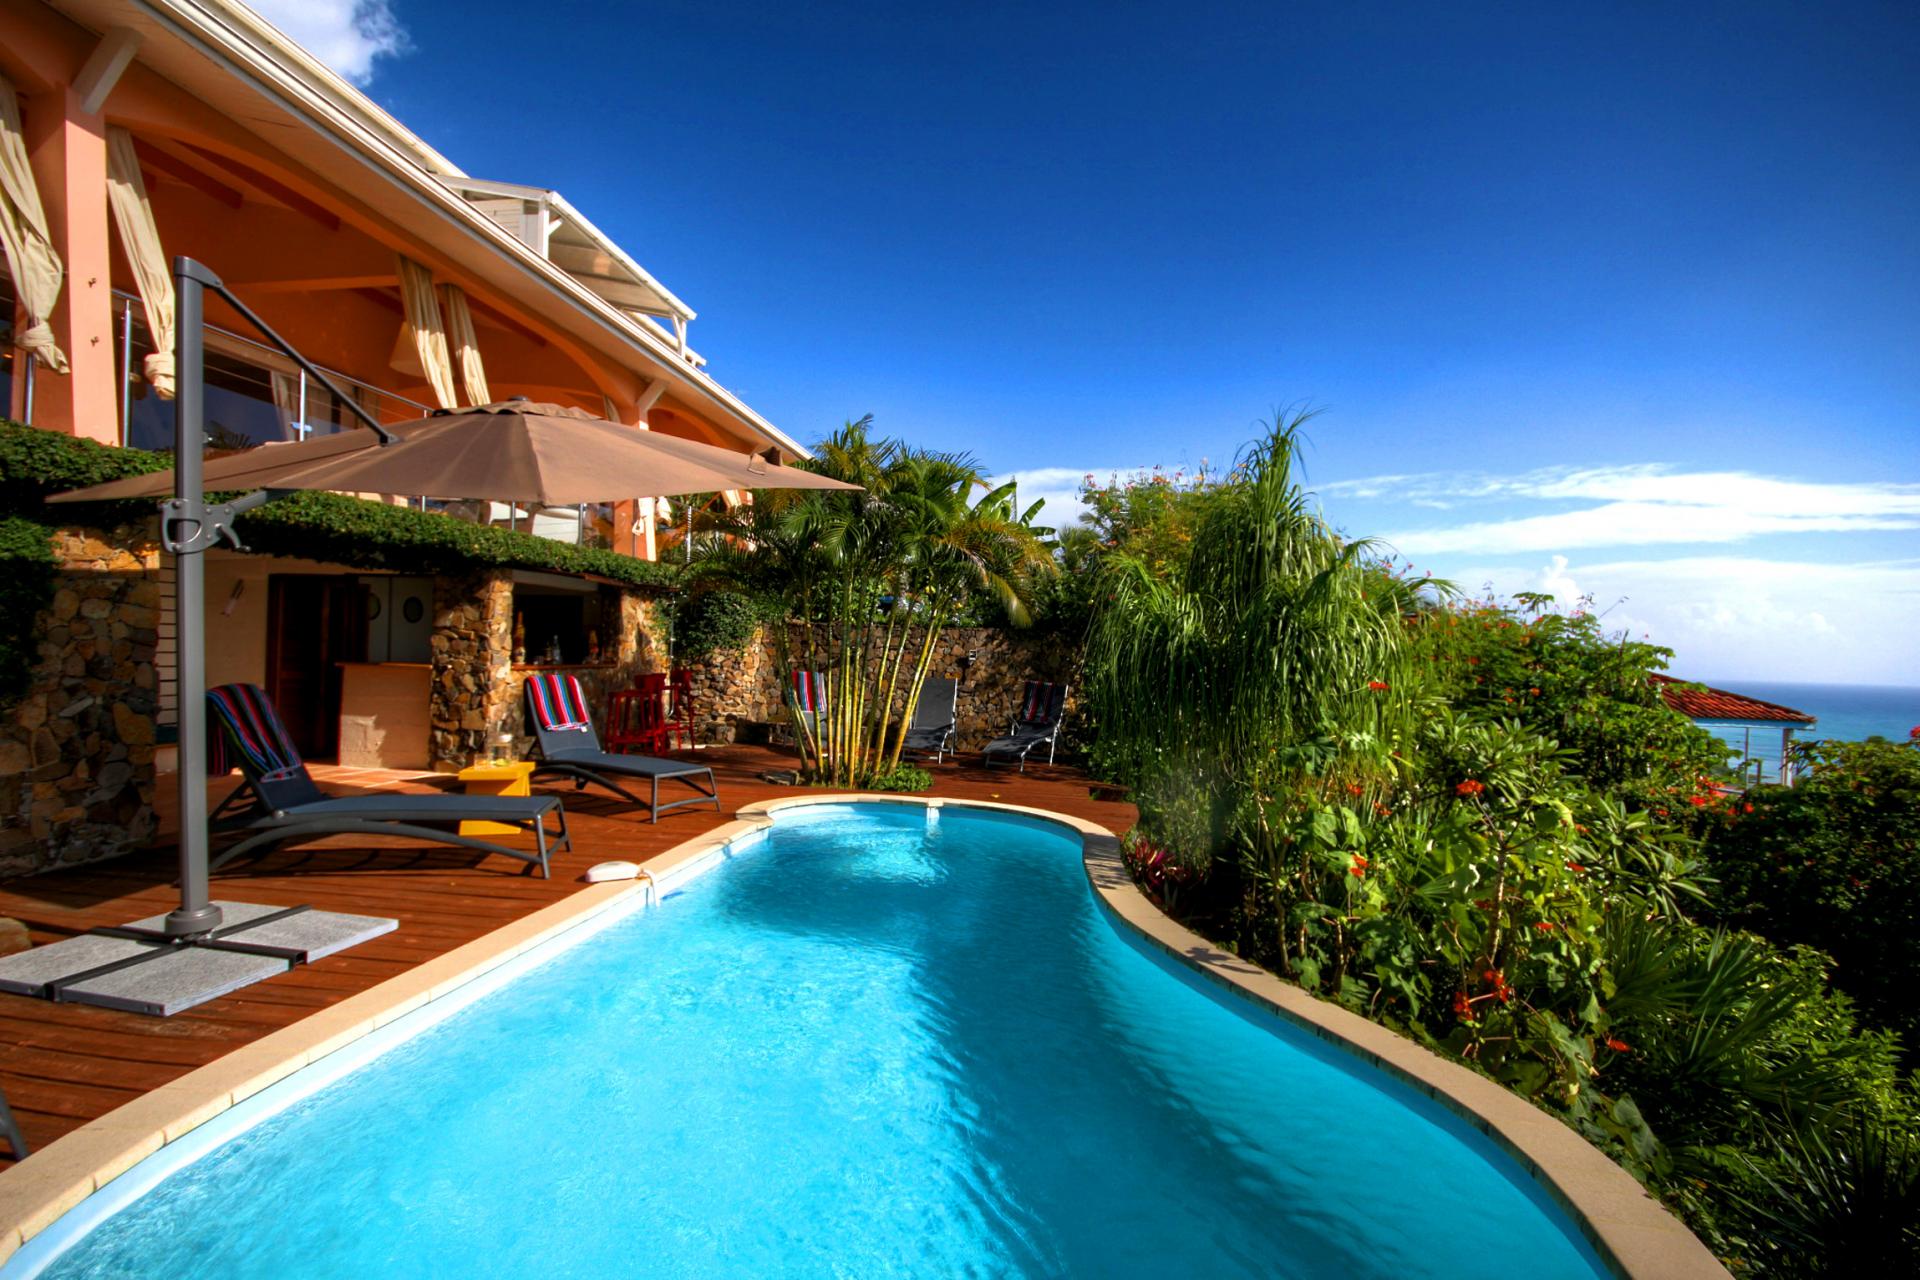 Location villa Martinique - Piscine et vue mer